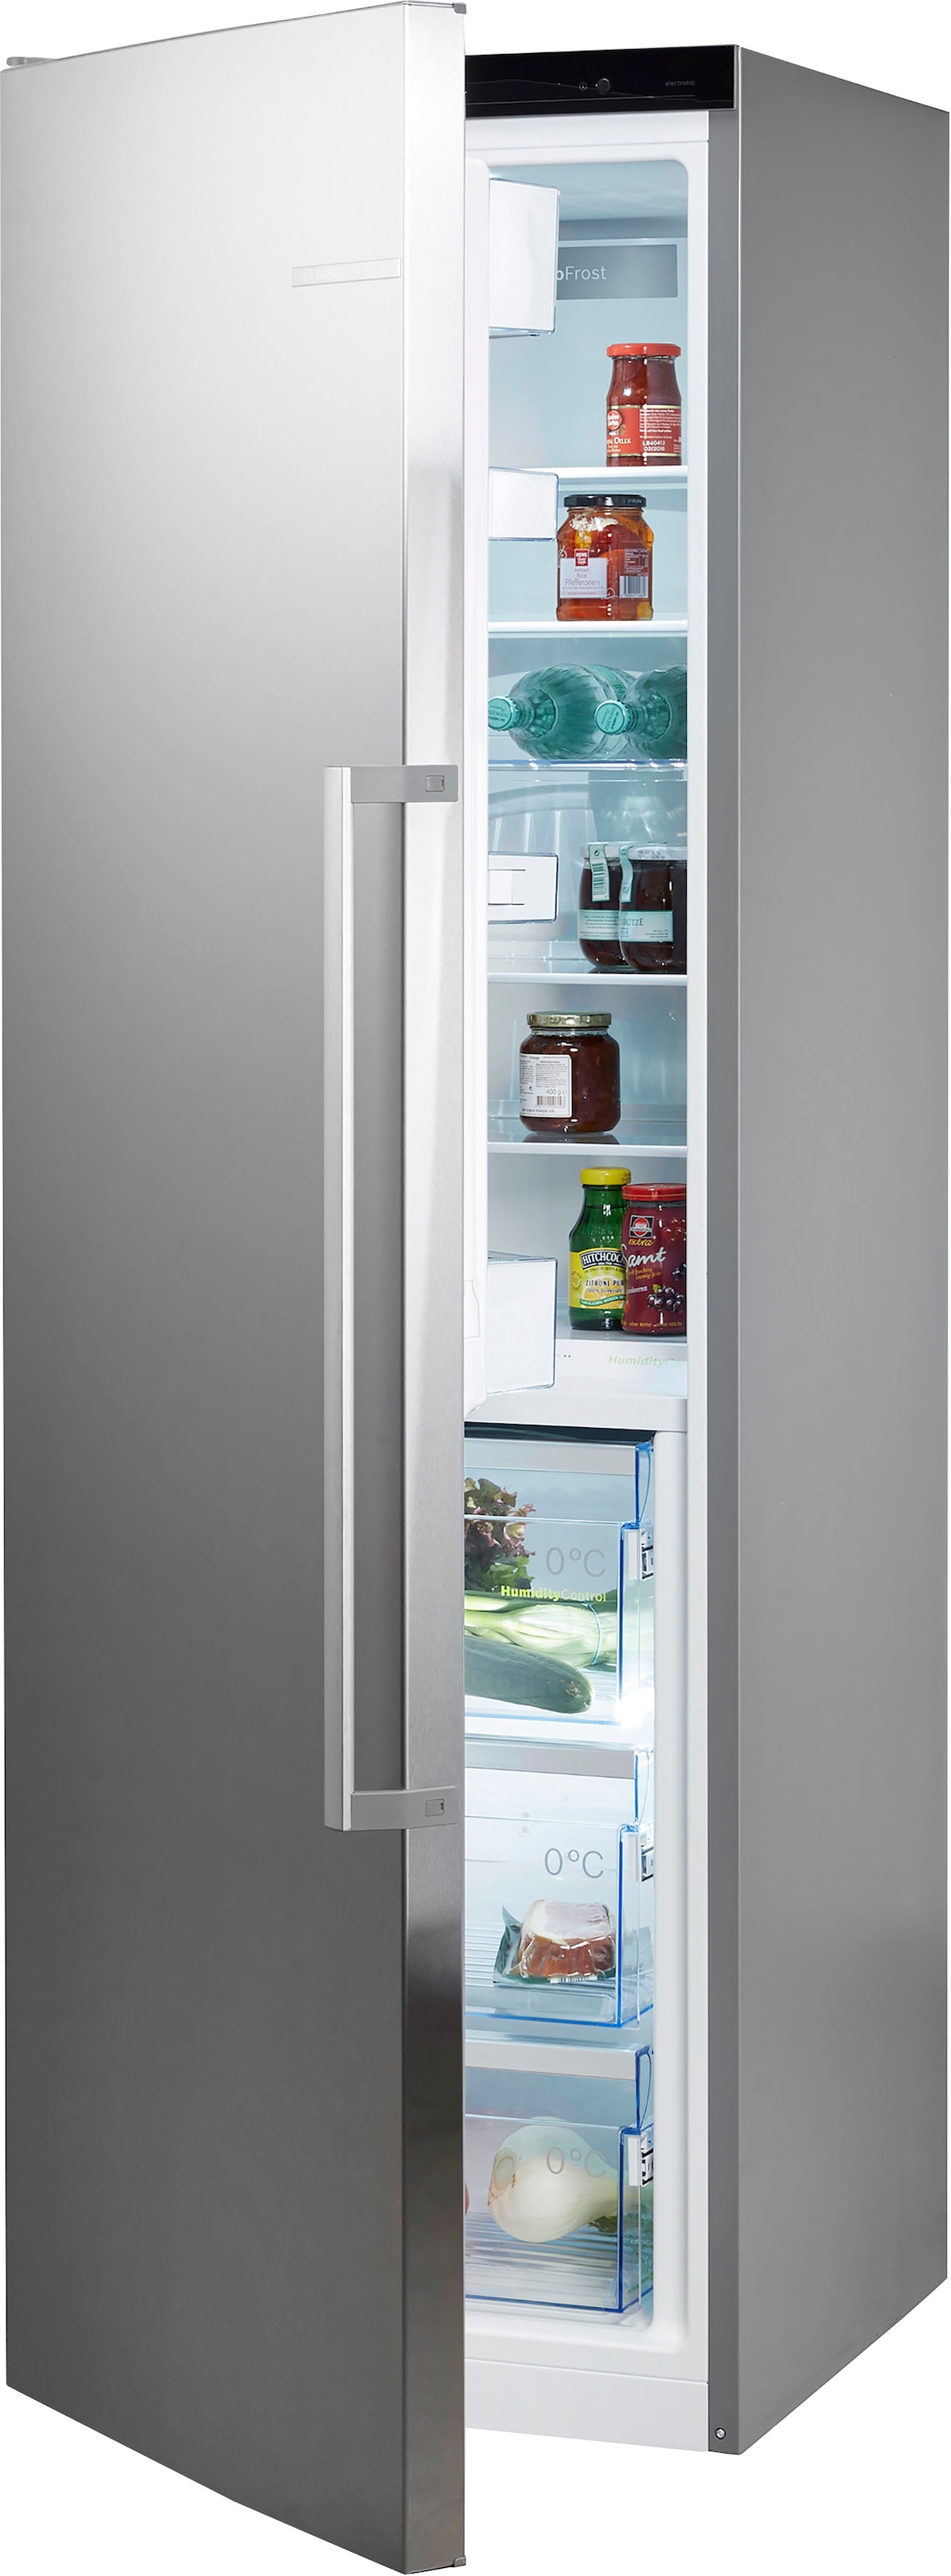 BOSCH Kühlschrank »KSF36PIDP«, KSF36PIDP, 186 cm hoch, 60 cm breit